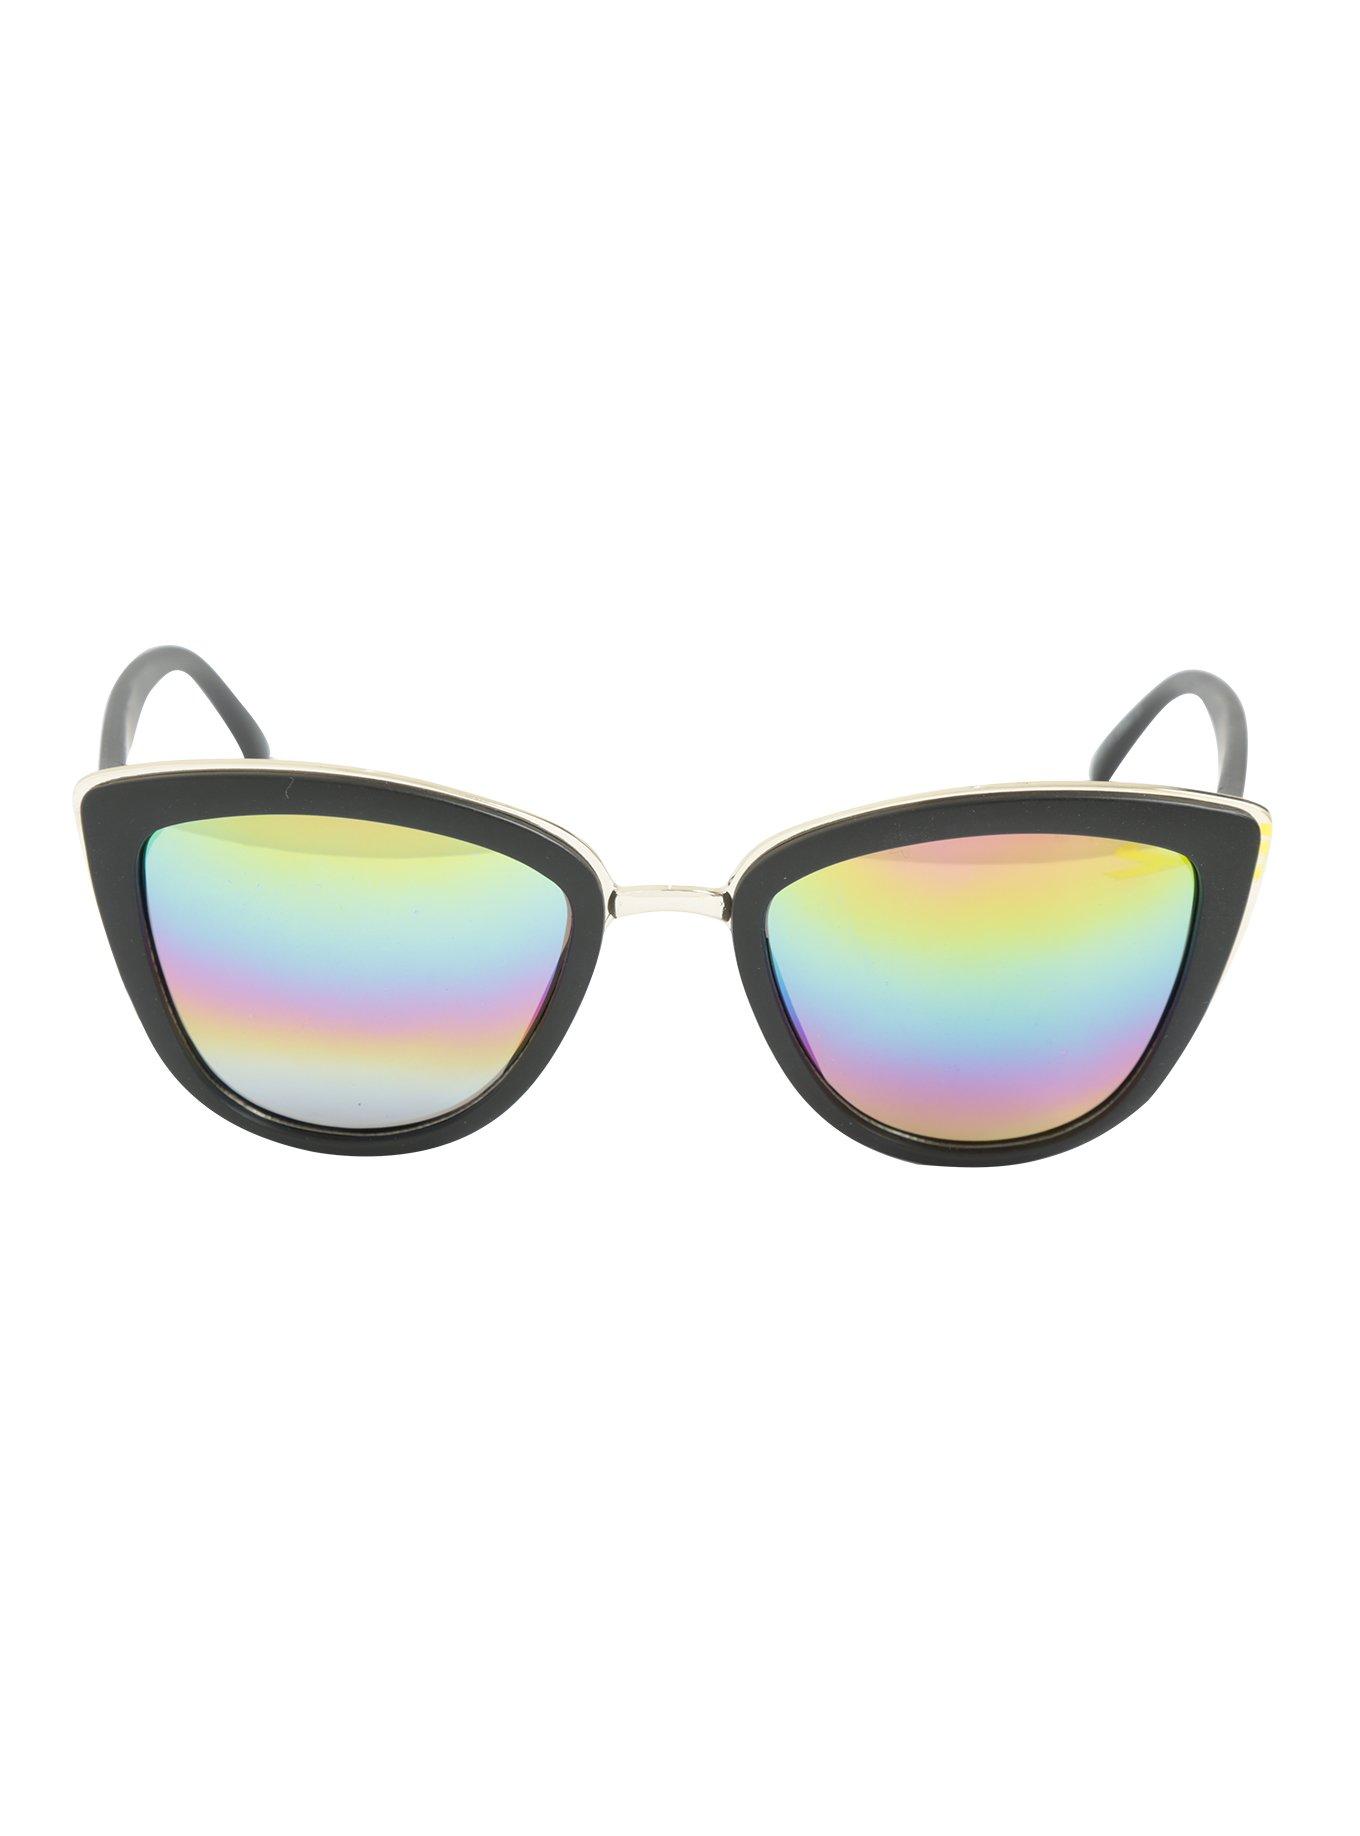 Black Rainbow Lens Metal Bridge Sunglasses, , alternate